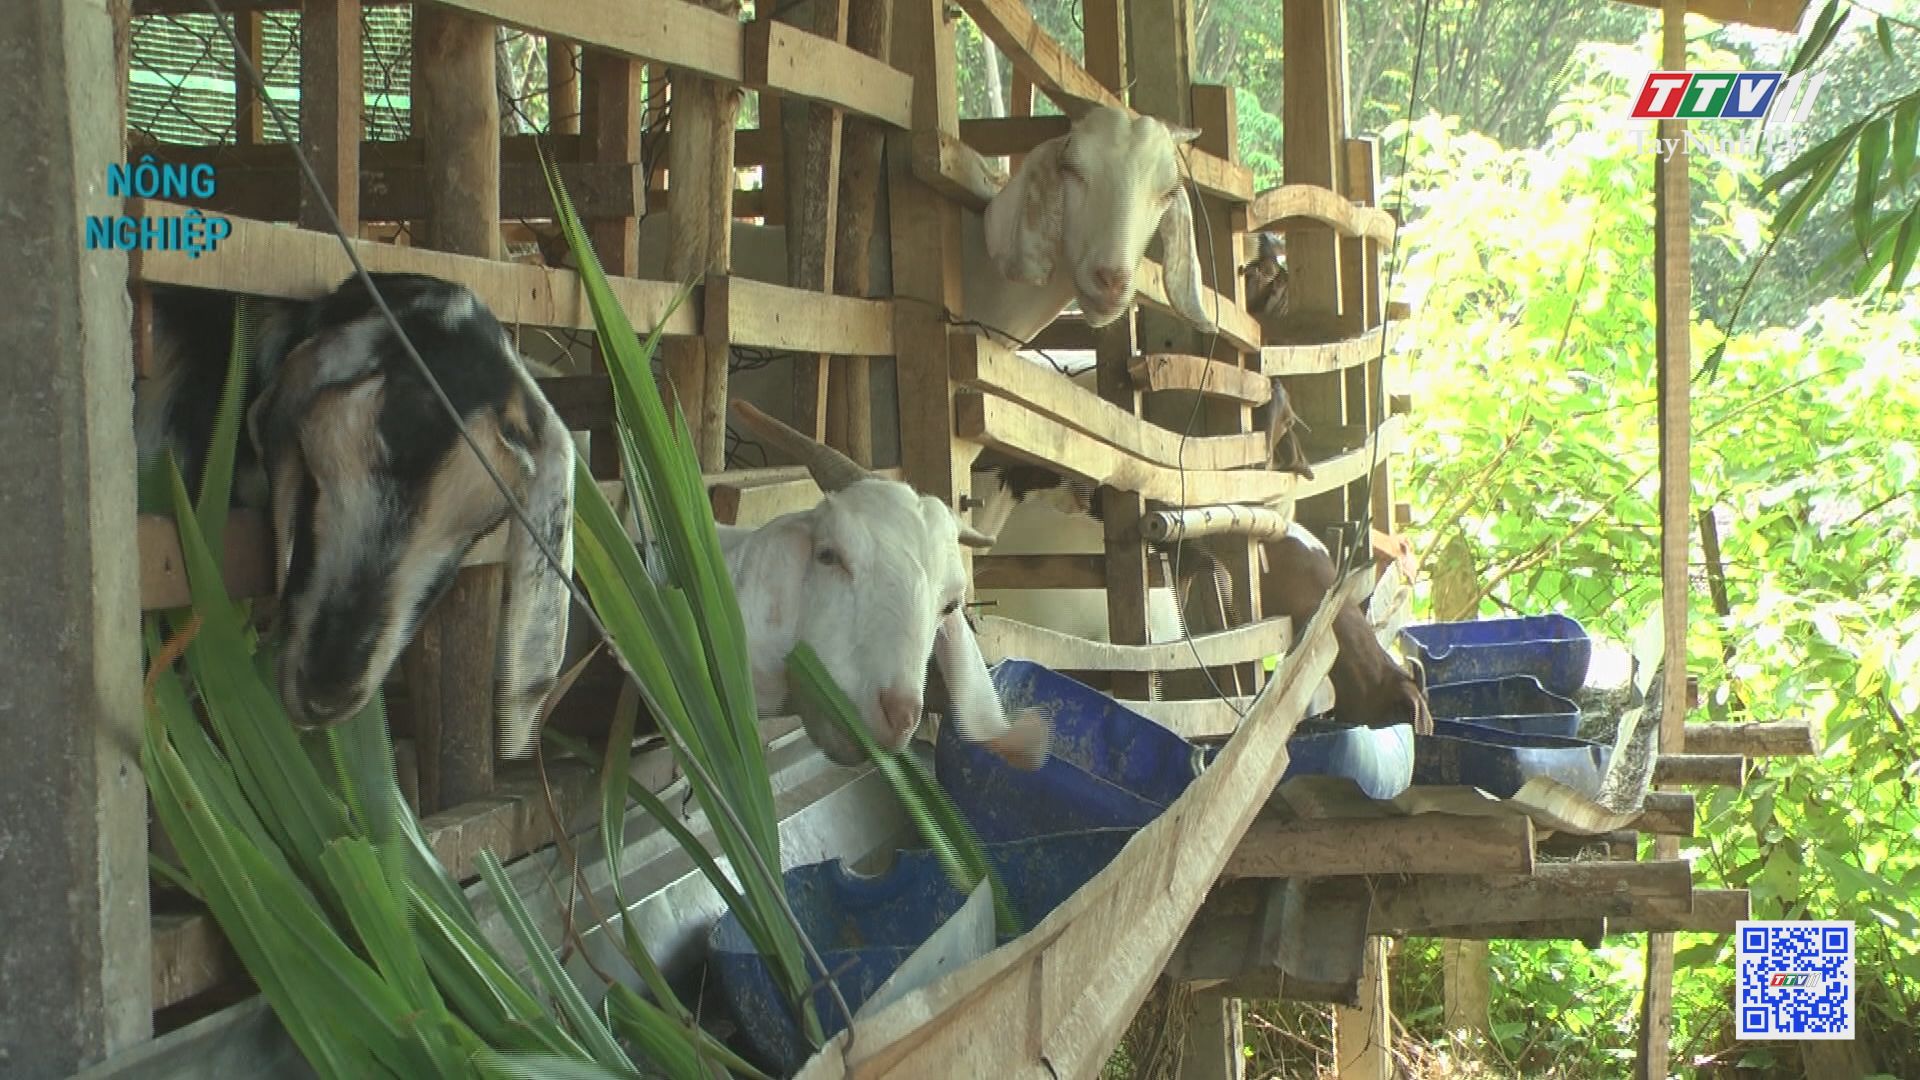 Hiệu quả mô hình nuôi dê ở Bến củi | NÔNG NGHIỆP TÂY NINH | TayNinhTV